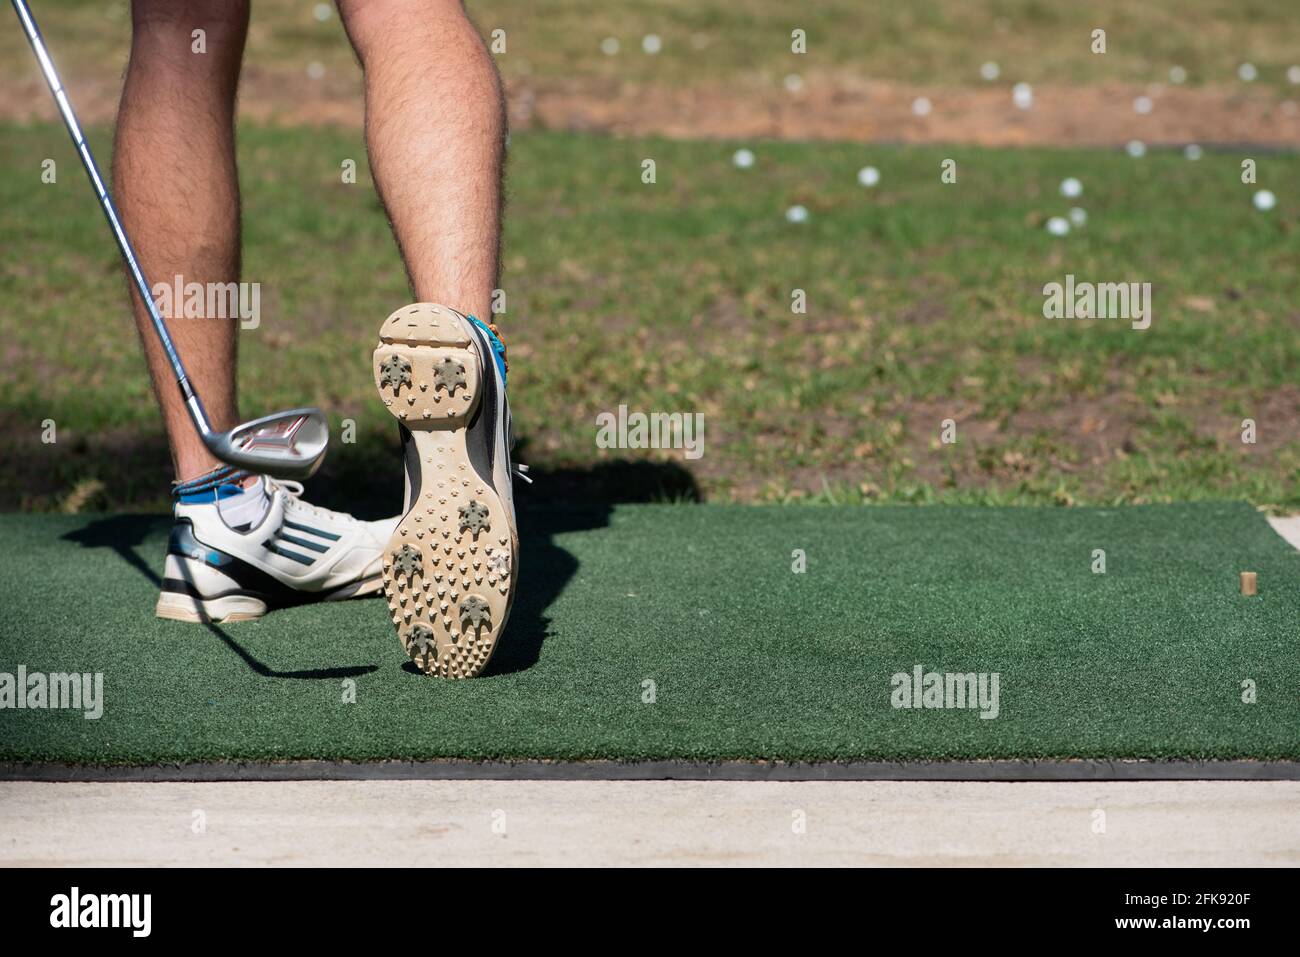 Gros plan d'un jeune homme qui frappe une balle de golf sur un terrain d'exercice avec le dessous de son golf chaussure visible Banque D'Images